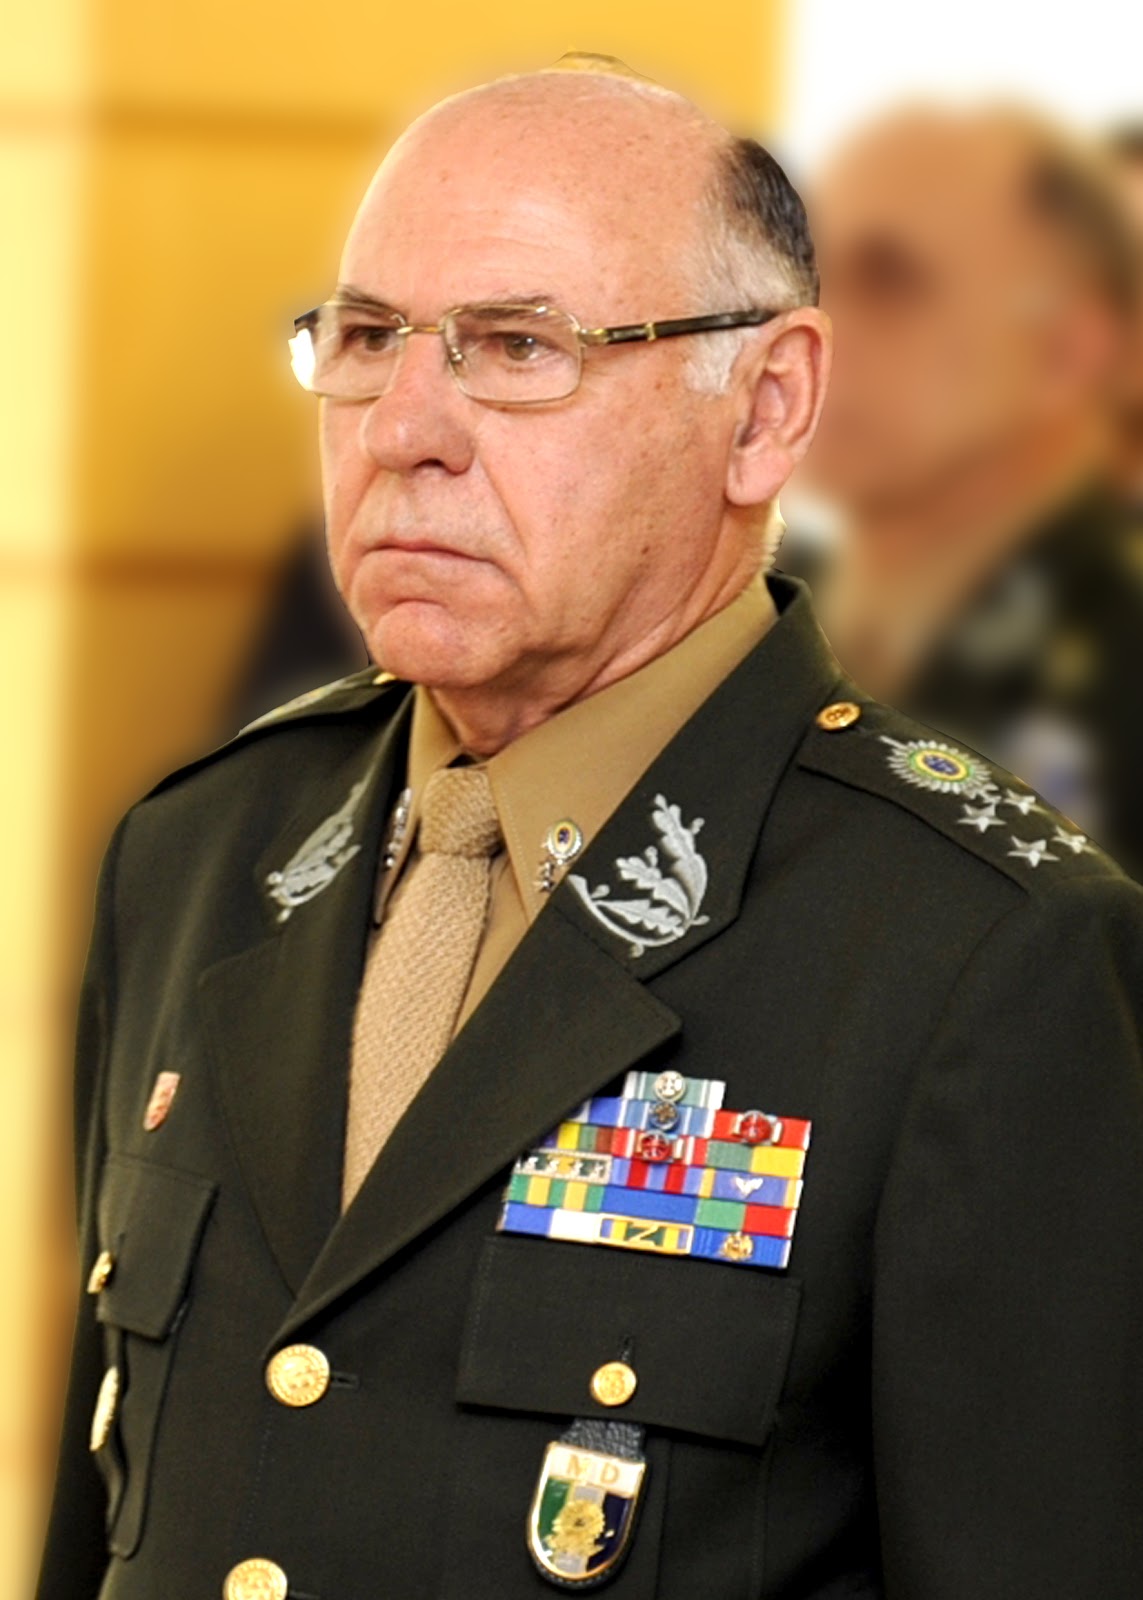 Entrevista com o Chefe do Estado Maior Conjunto das Forças Armadas do Brasil, General de Exército José Carlos de Nardi